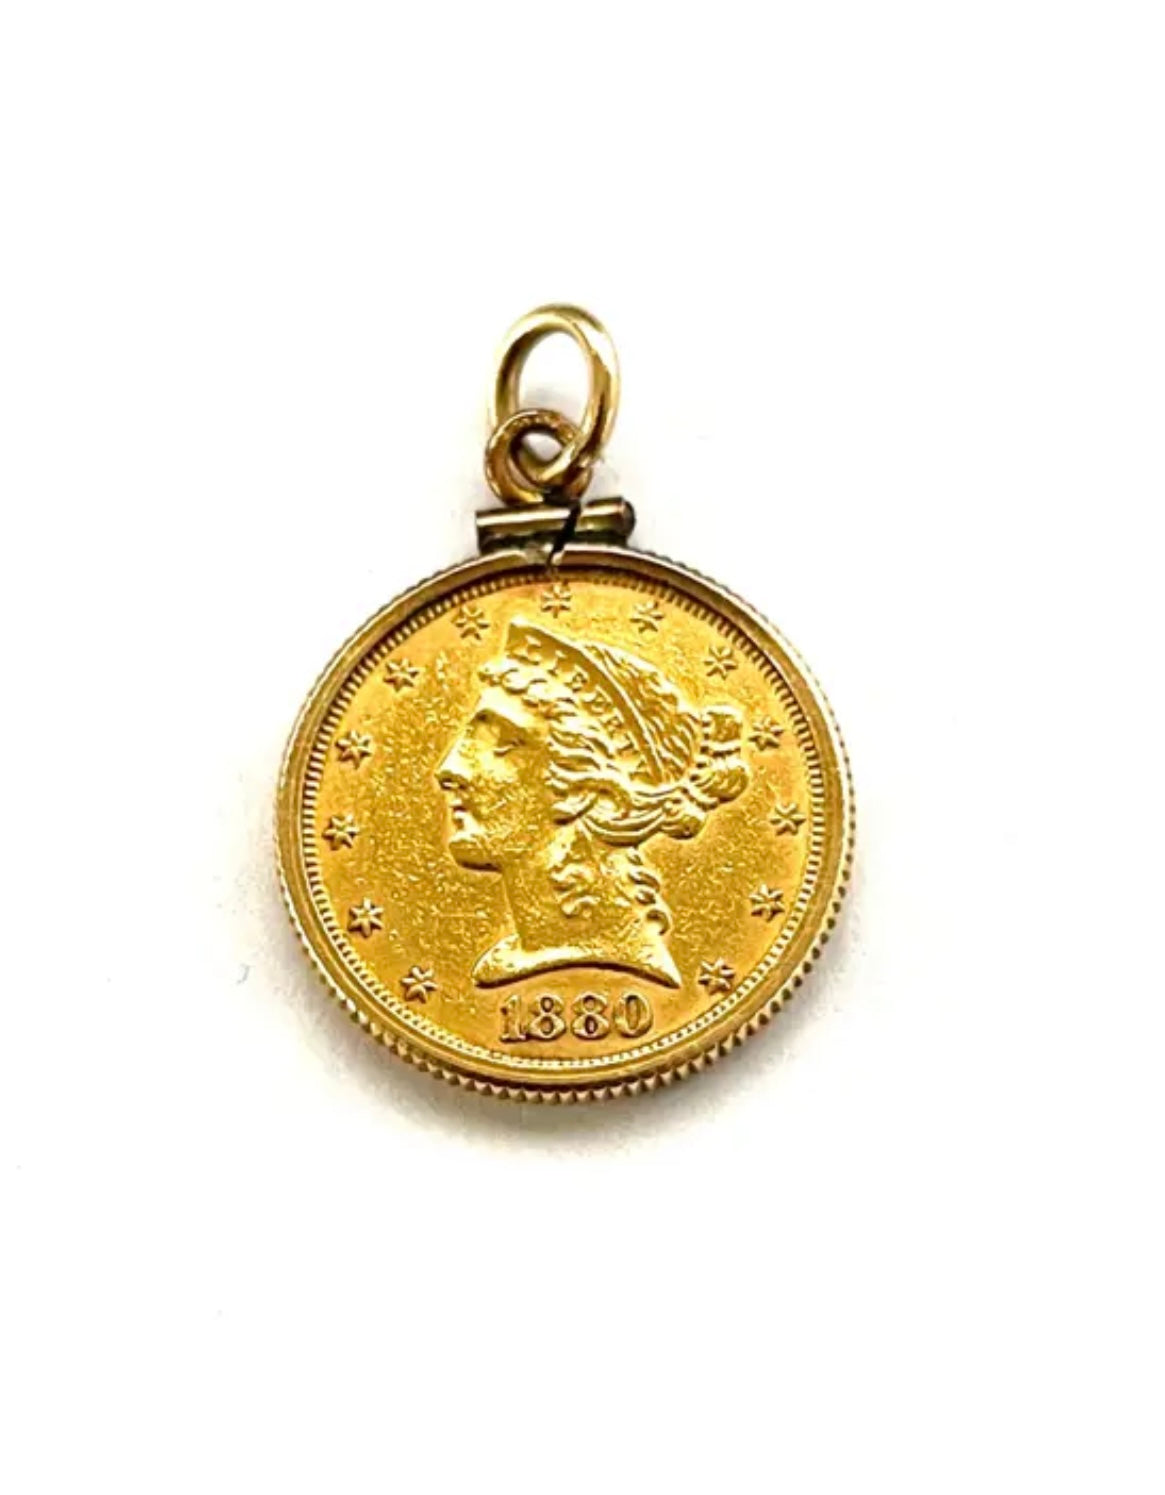 1880 Liberty Gold Half Eagle $5 Coin - Rare Gold Coin Pendant